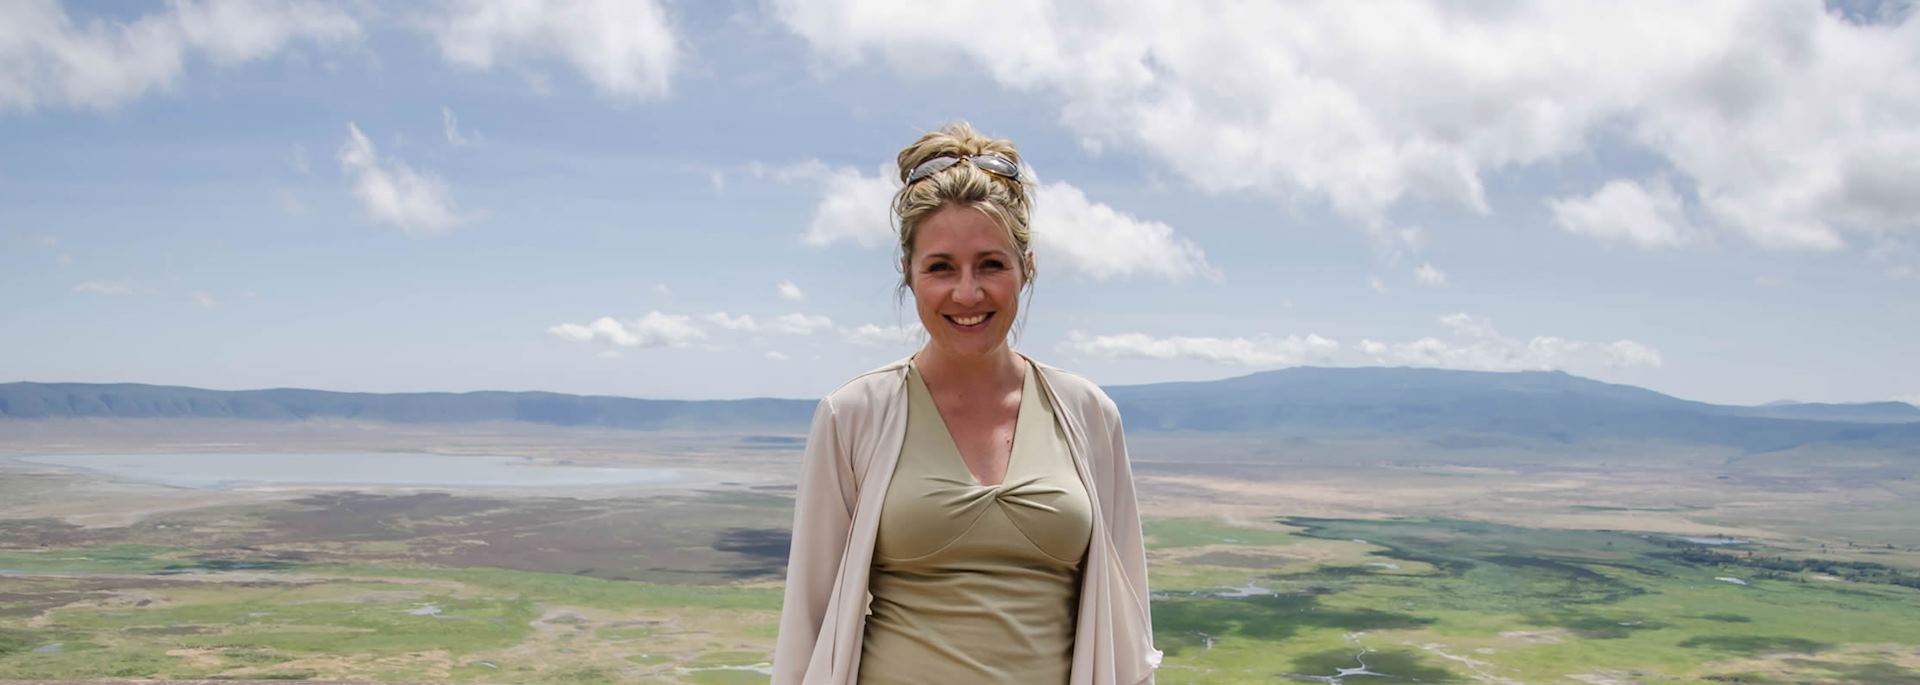 Arista at the Ngorongoro Crater, Tanzania